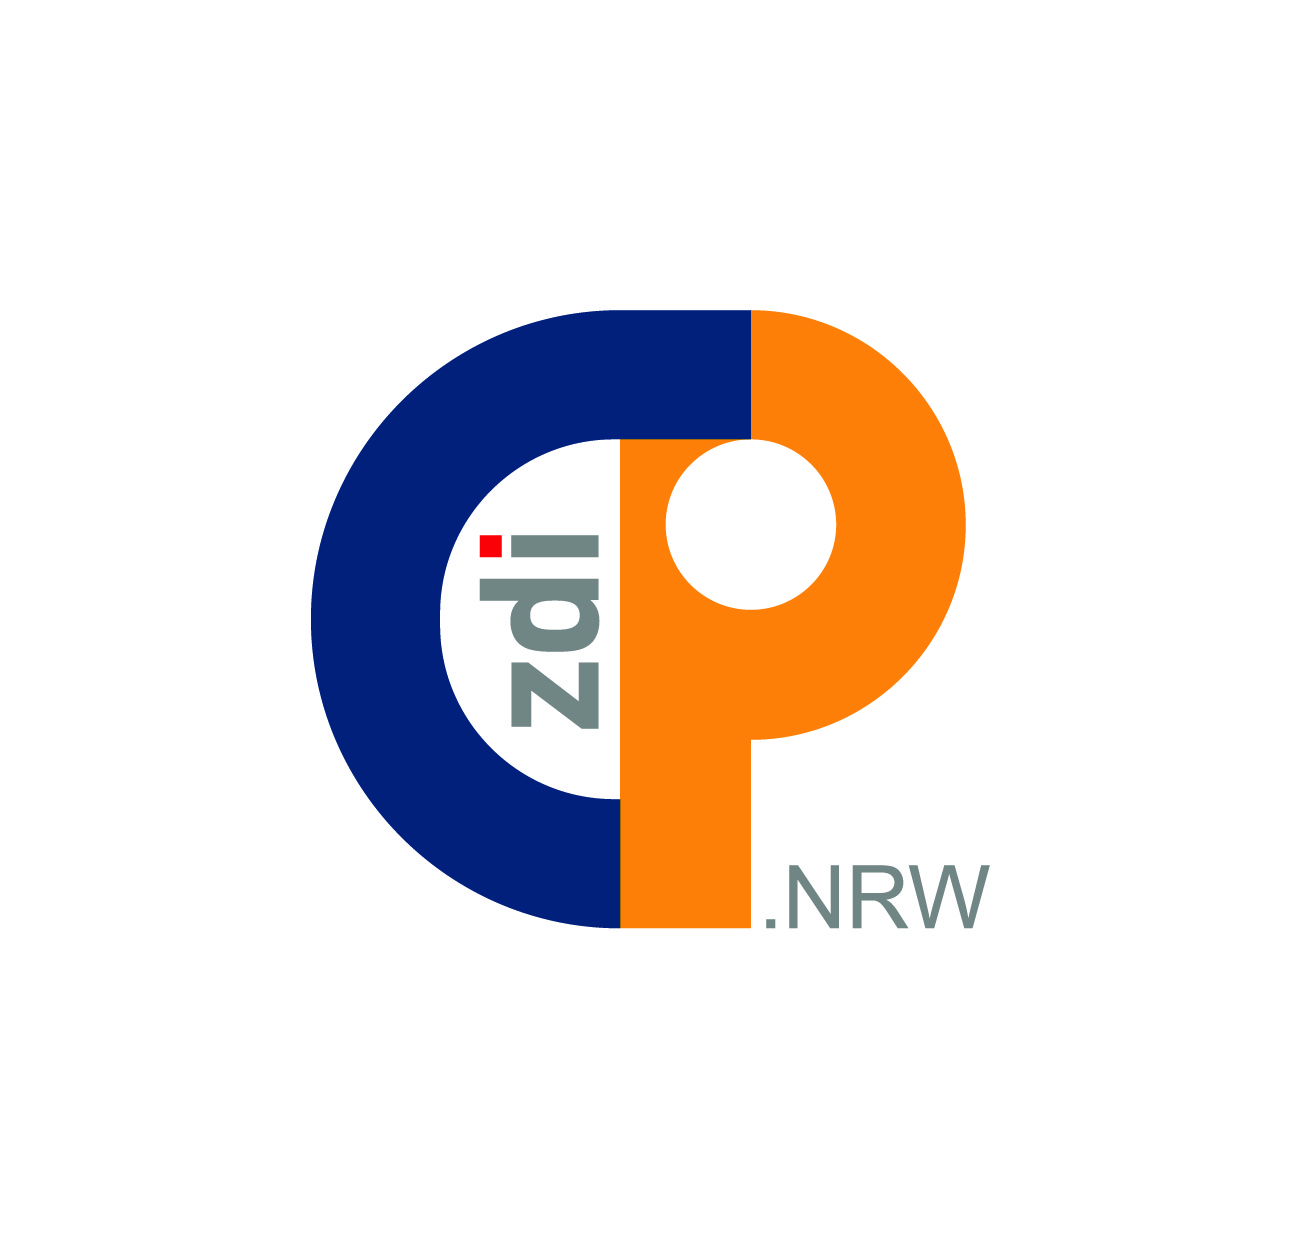 На рисунке показан новый логотип платформы сообщества zdi. На нем изображена темно-синяя буква C, переходящая в оранжевую букву P. В белом пространстве между C и P zdi — серый, точка i — красная. NRW написано маленькими серыми буквами внизу рядом с буквой P.